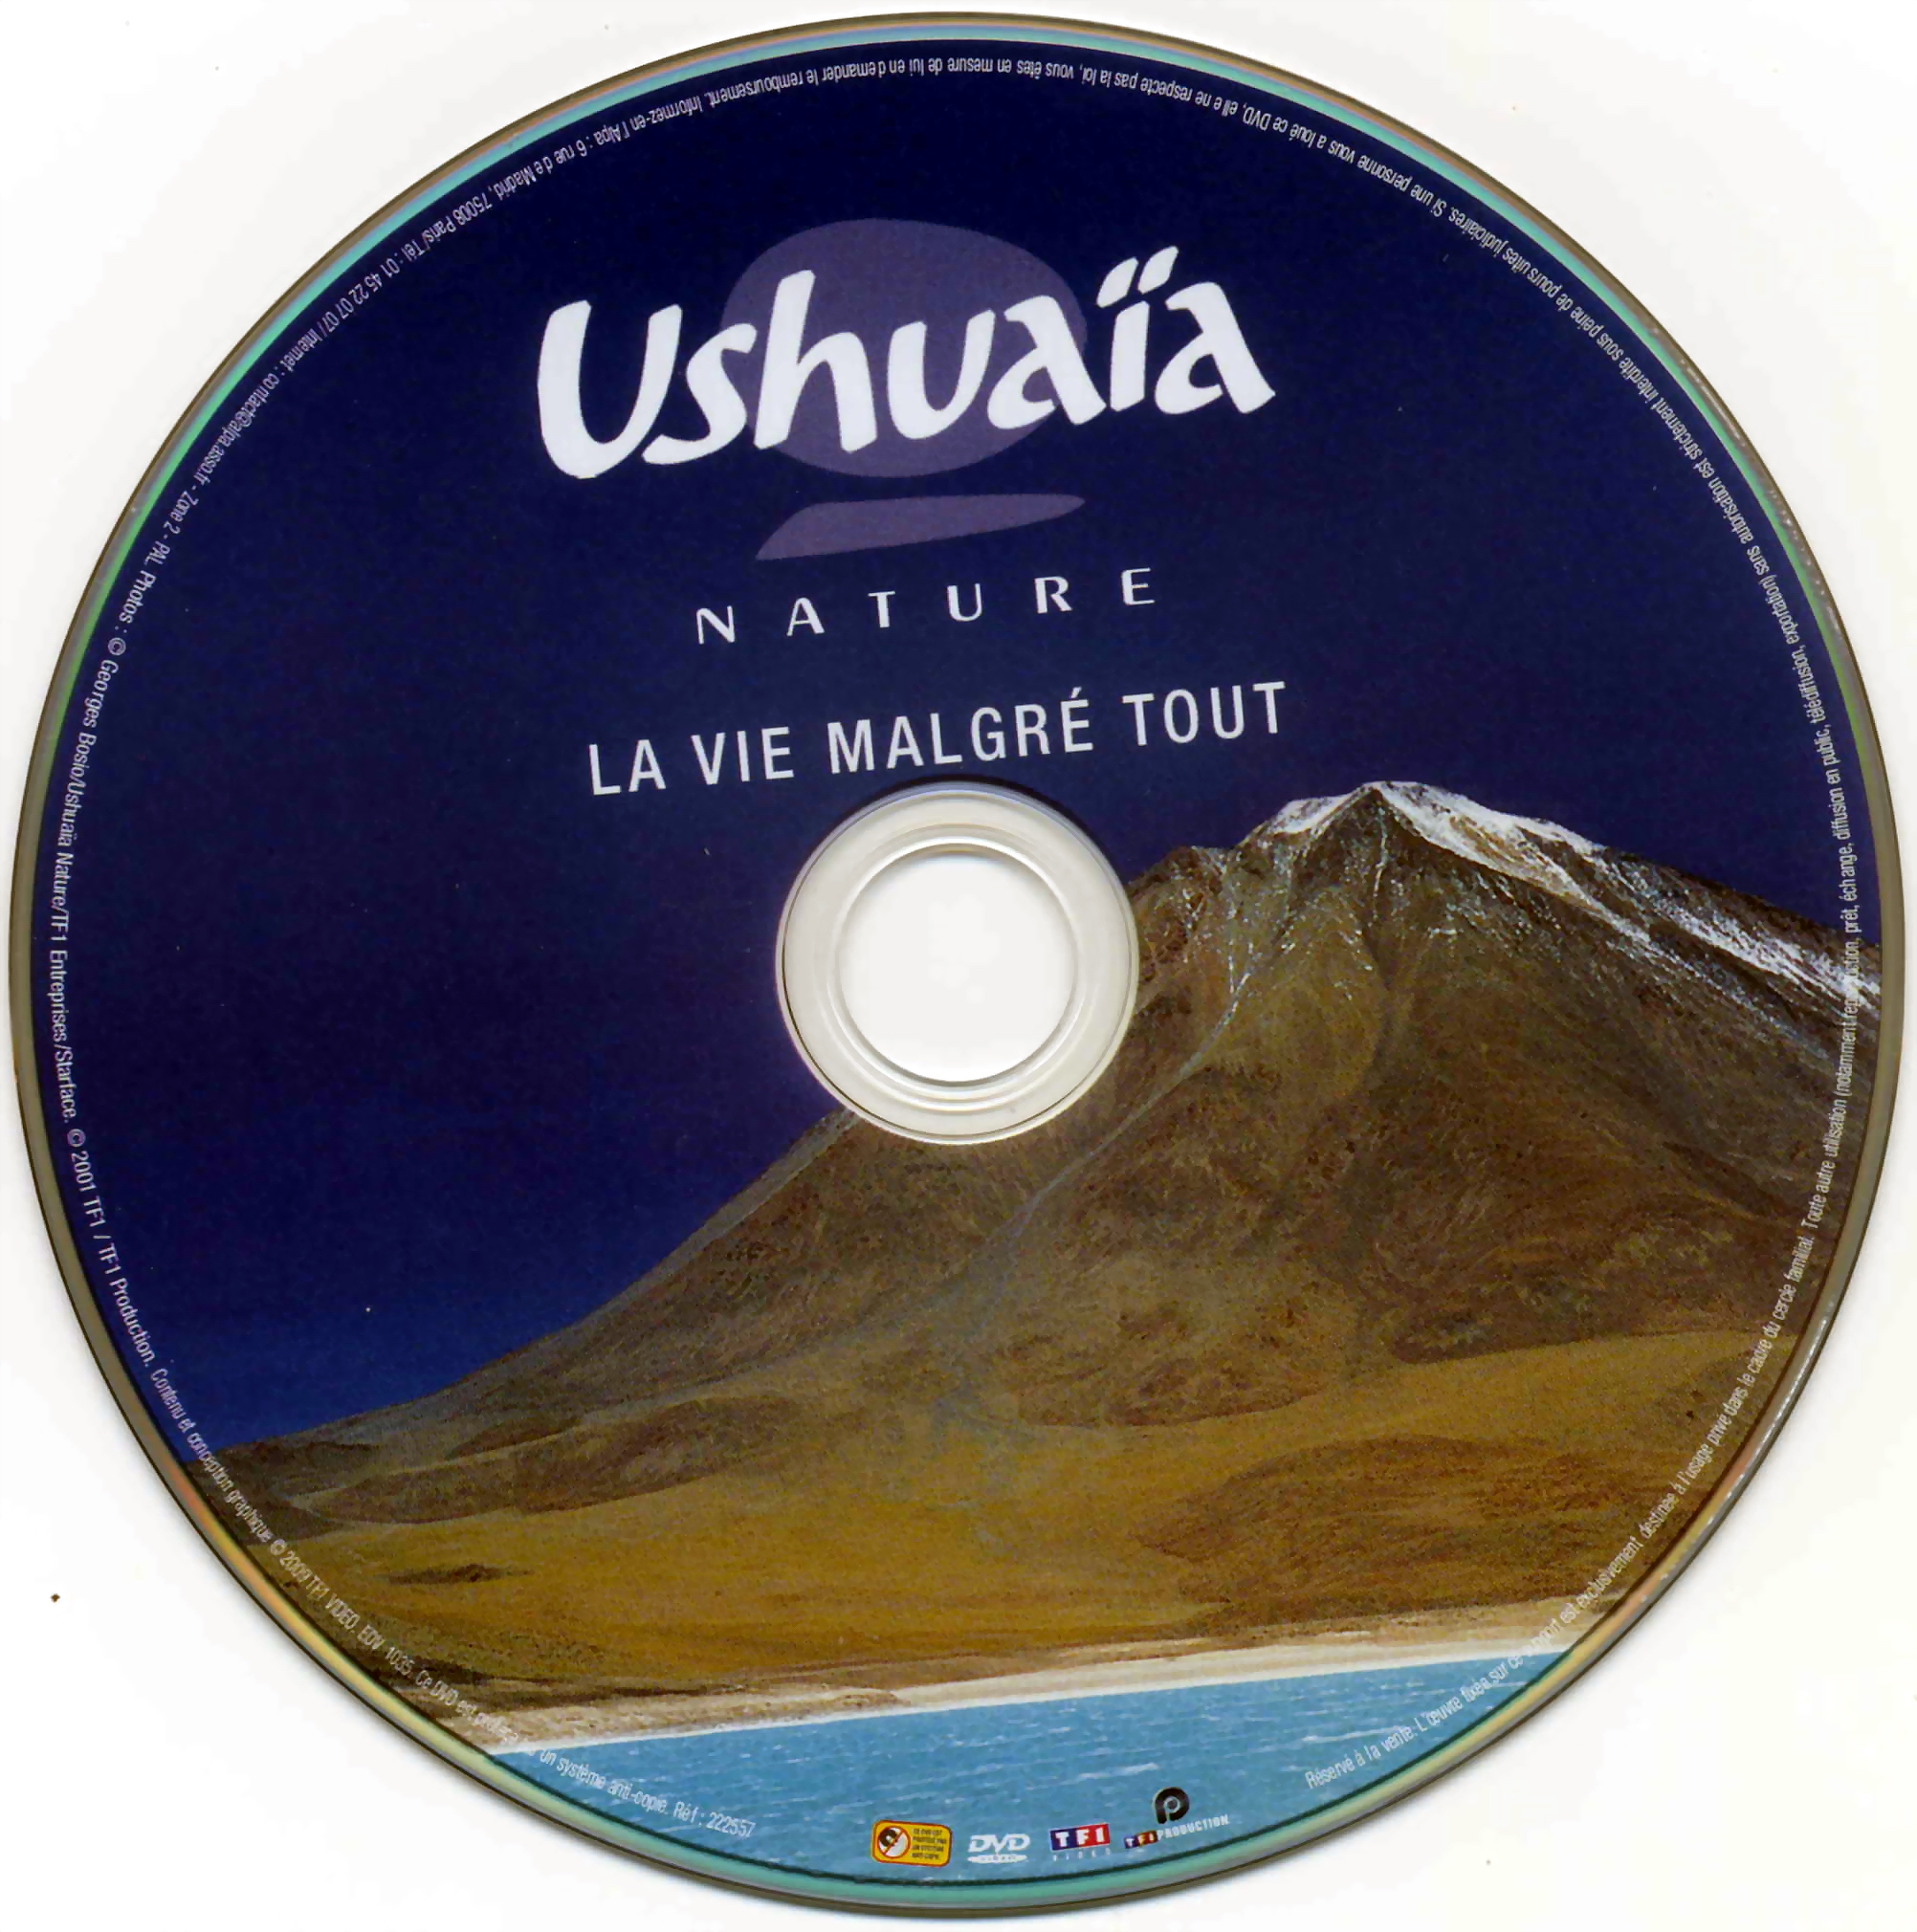 Ushuaia Nature - La vie malgre tout